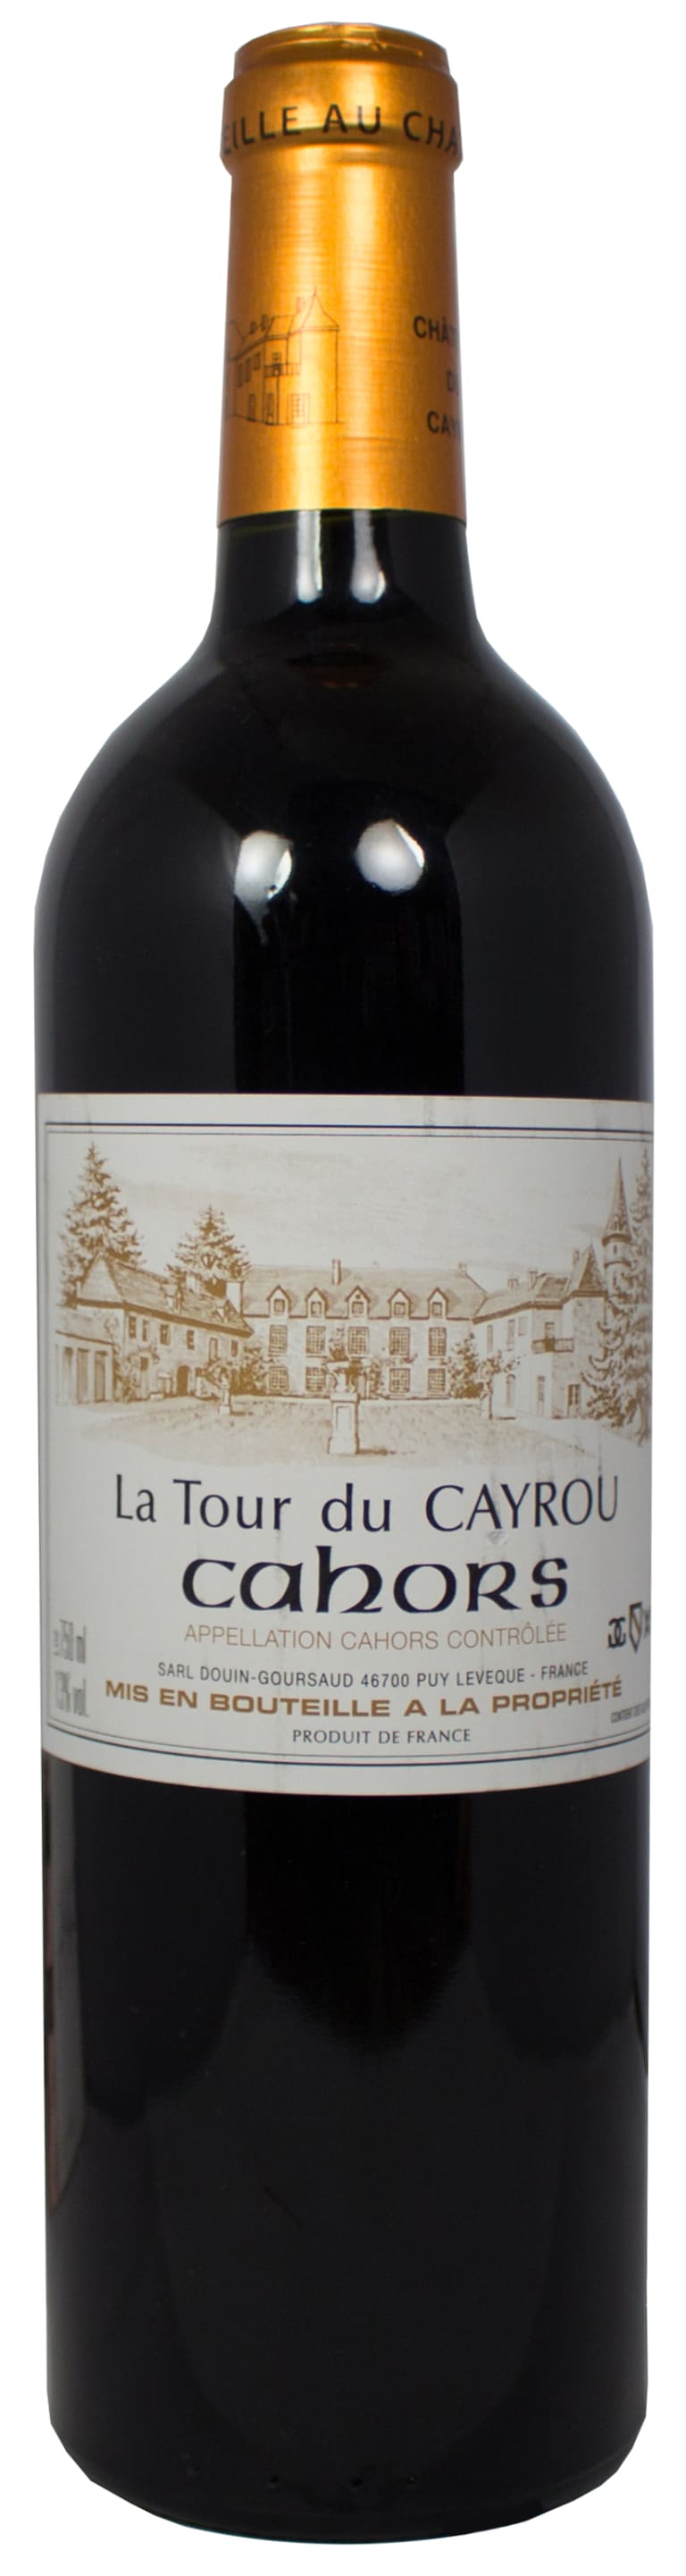 Château du Cayrou Cahors La Tour du Cayrou 2015